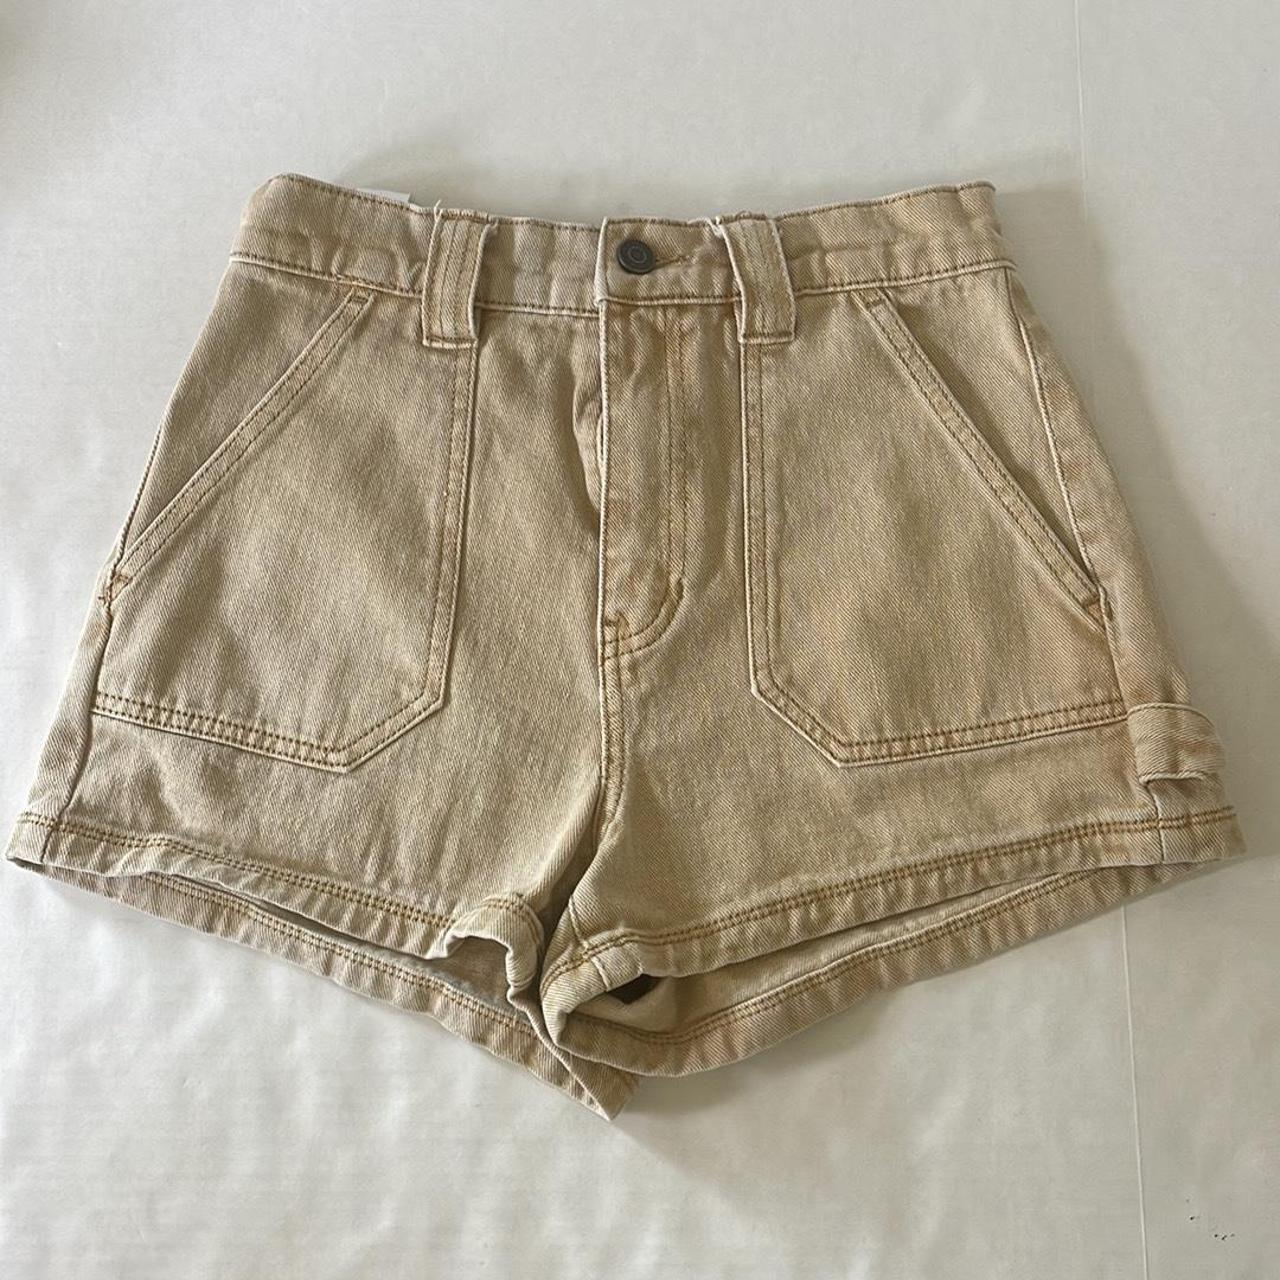 Pacsun Cargo Shorts. Women’s size 26, light tan color. - Depop